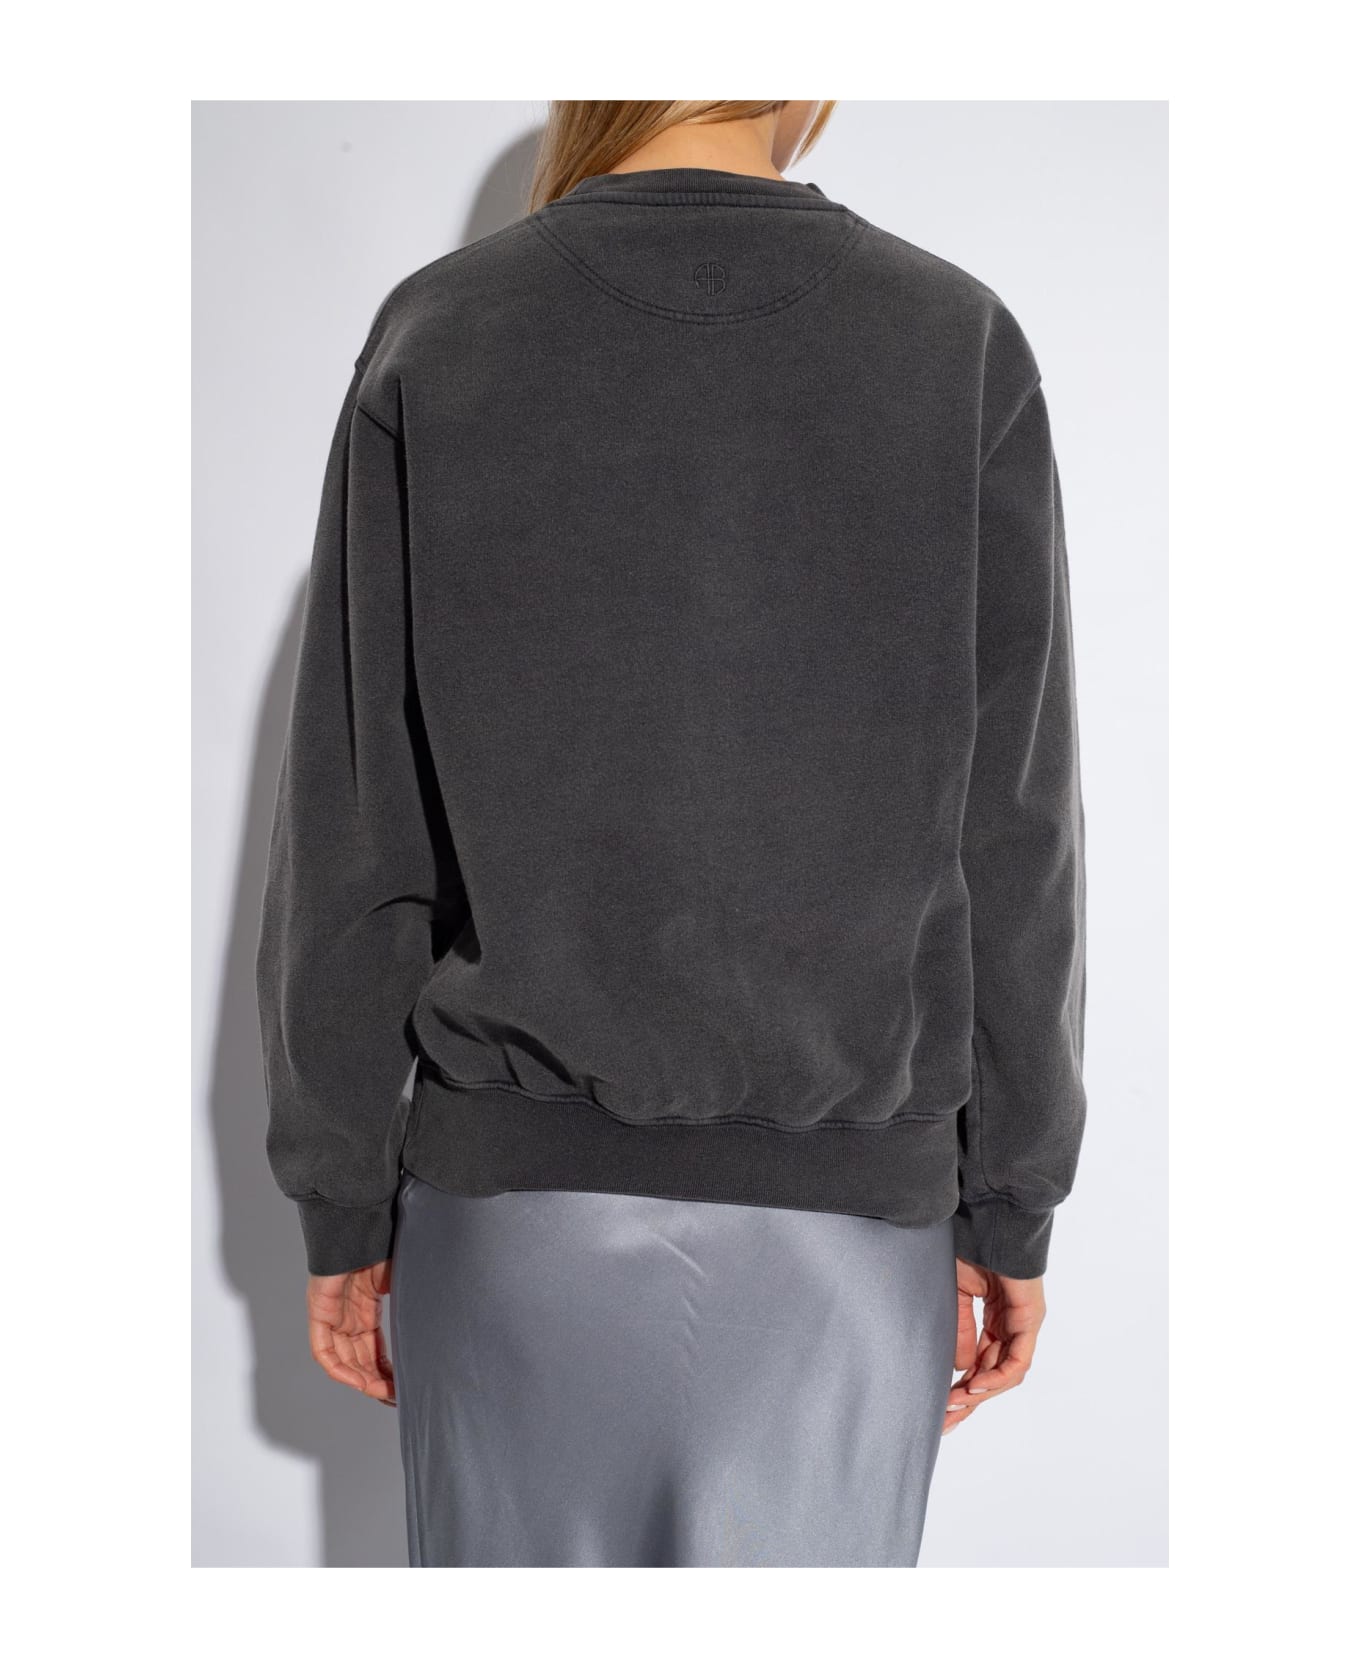 Anine Bing 'ramona' Printed Sweatshirt - Washed black